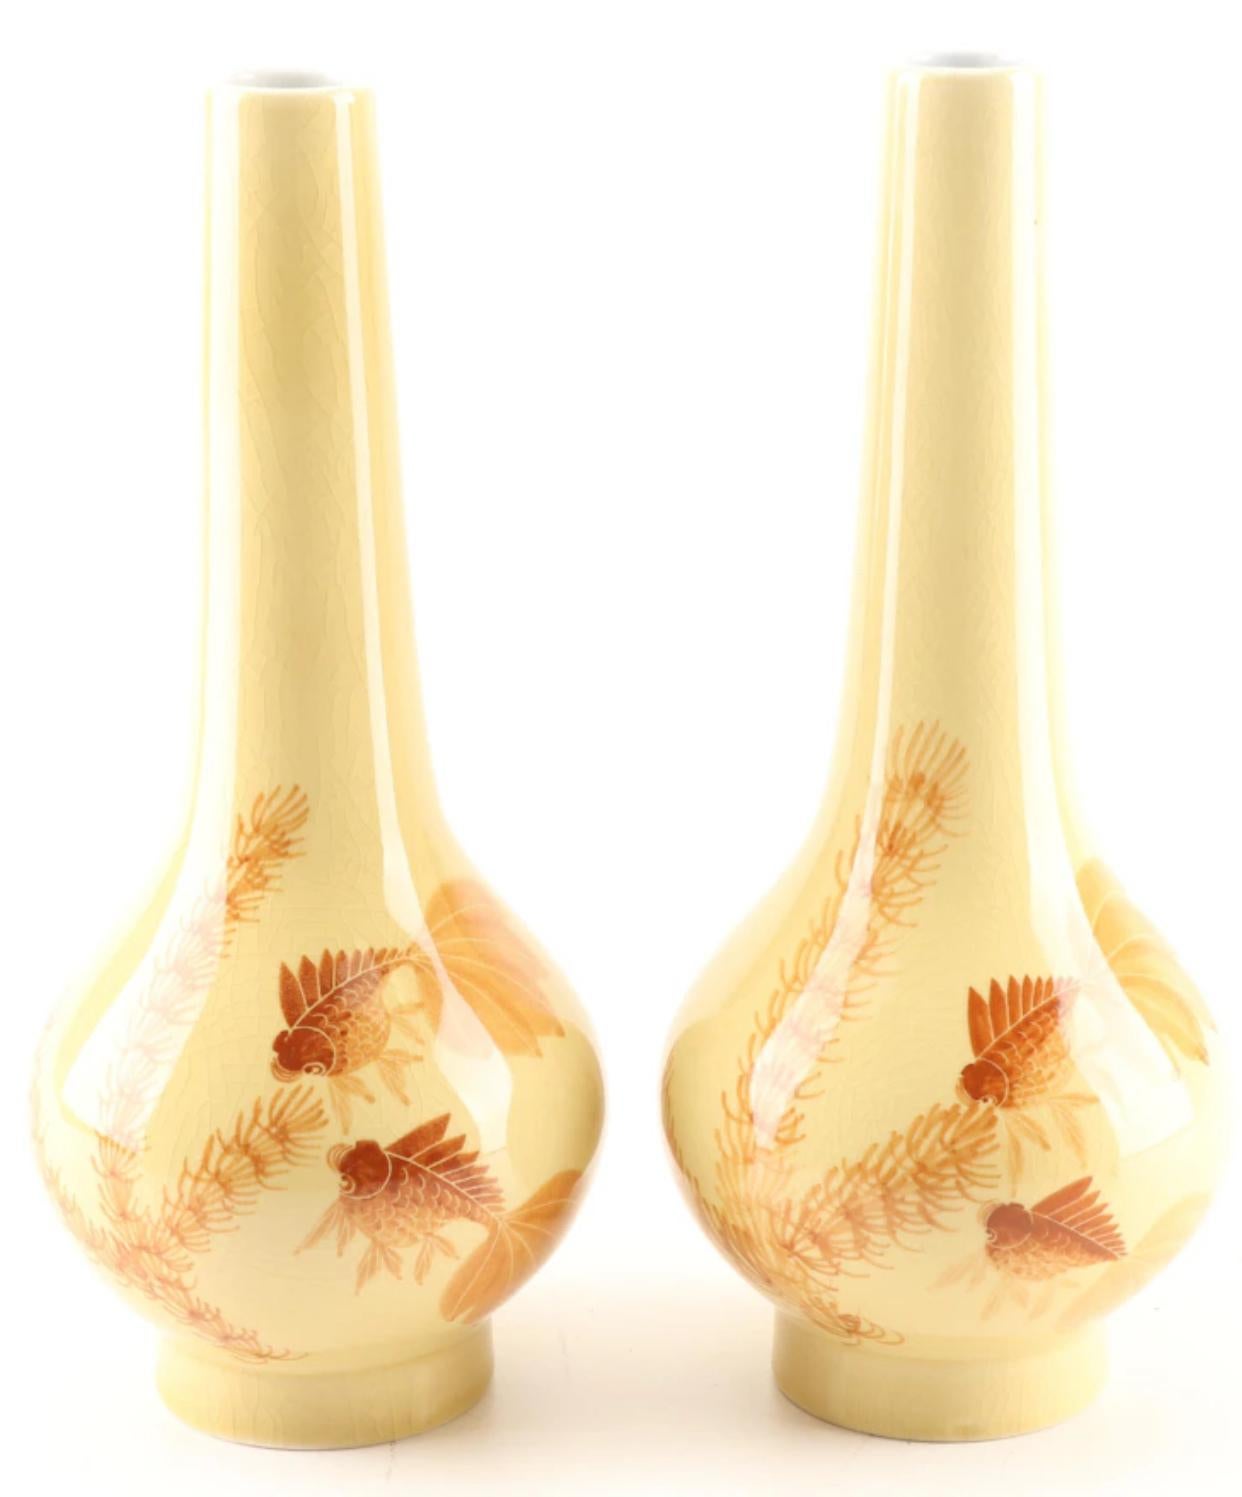 Paire de vases en forme de gourde peints à la main en Chine. Peint avec des paires orange de poissons rouges fantaisie à l'avant et à l'arrière, ainsi qu'avec de la flore aquatique. Les fonds sont ornés de caractères chinois qui indiquent le règne